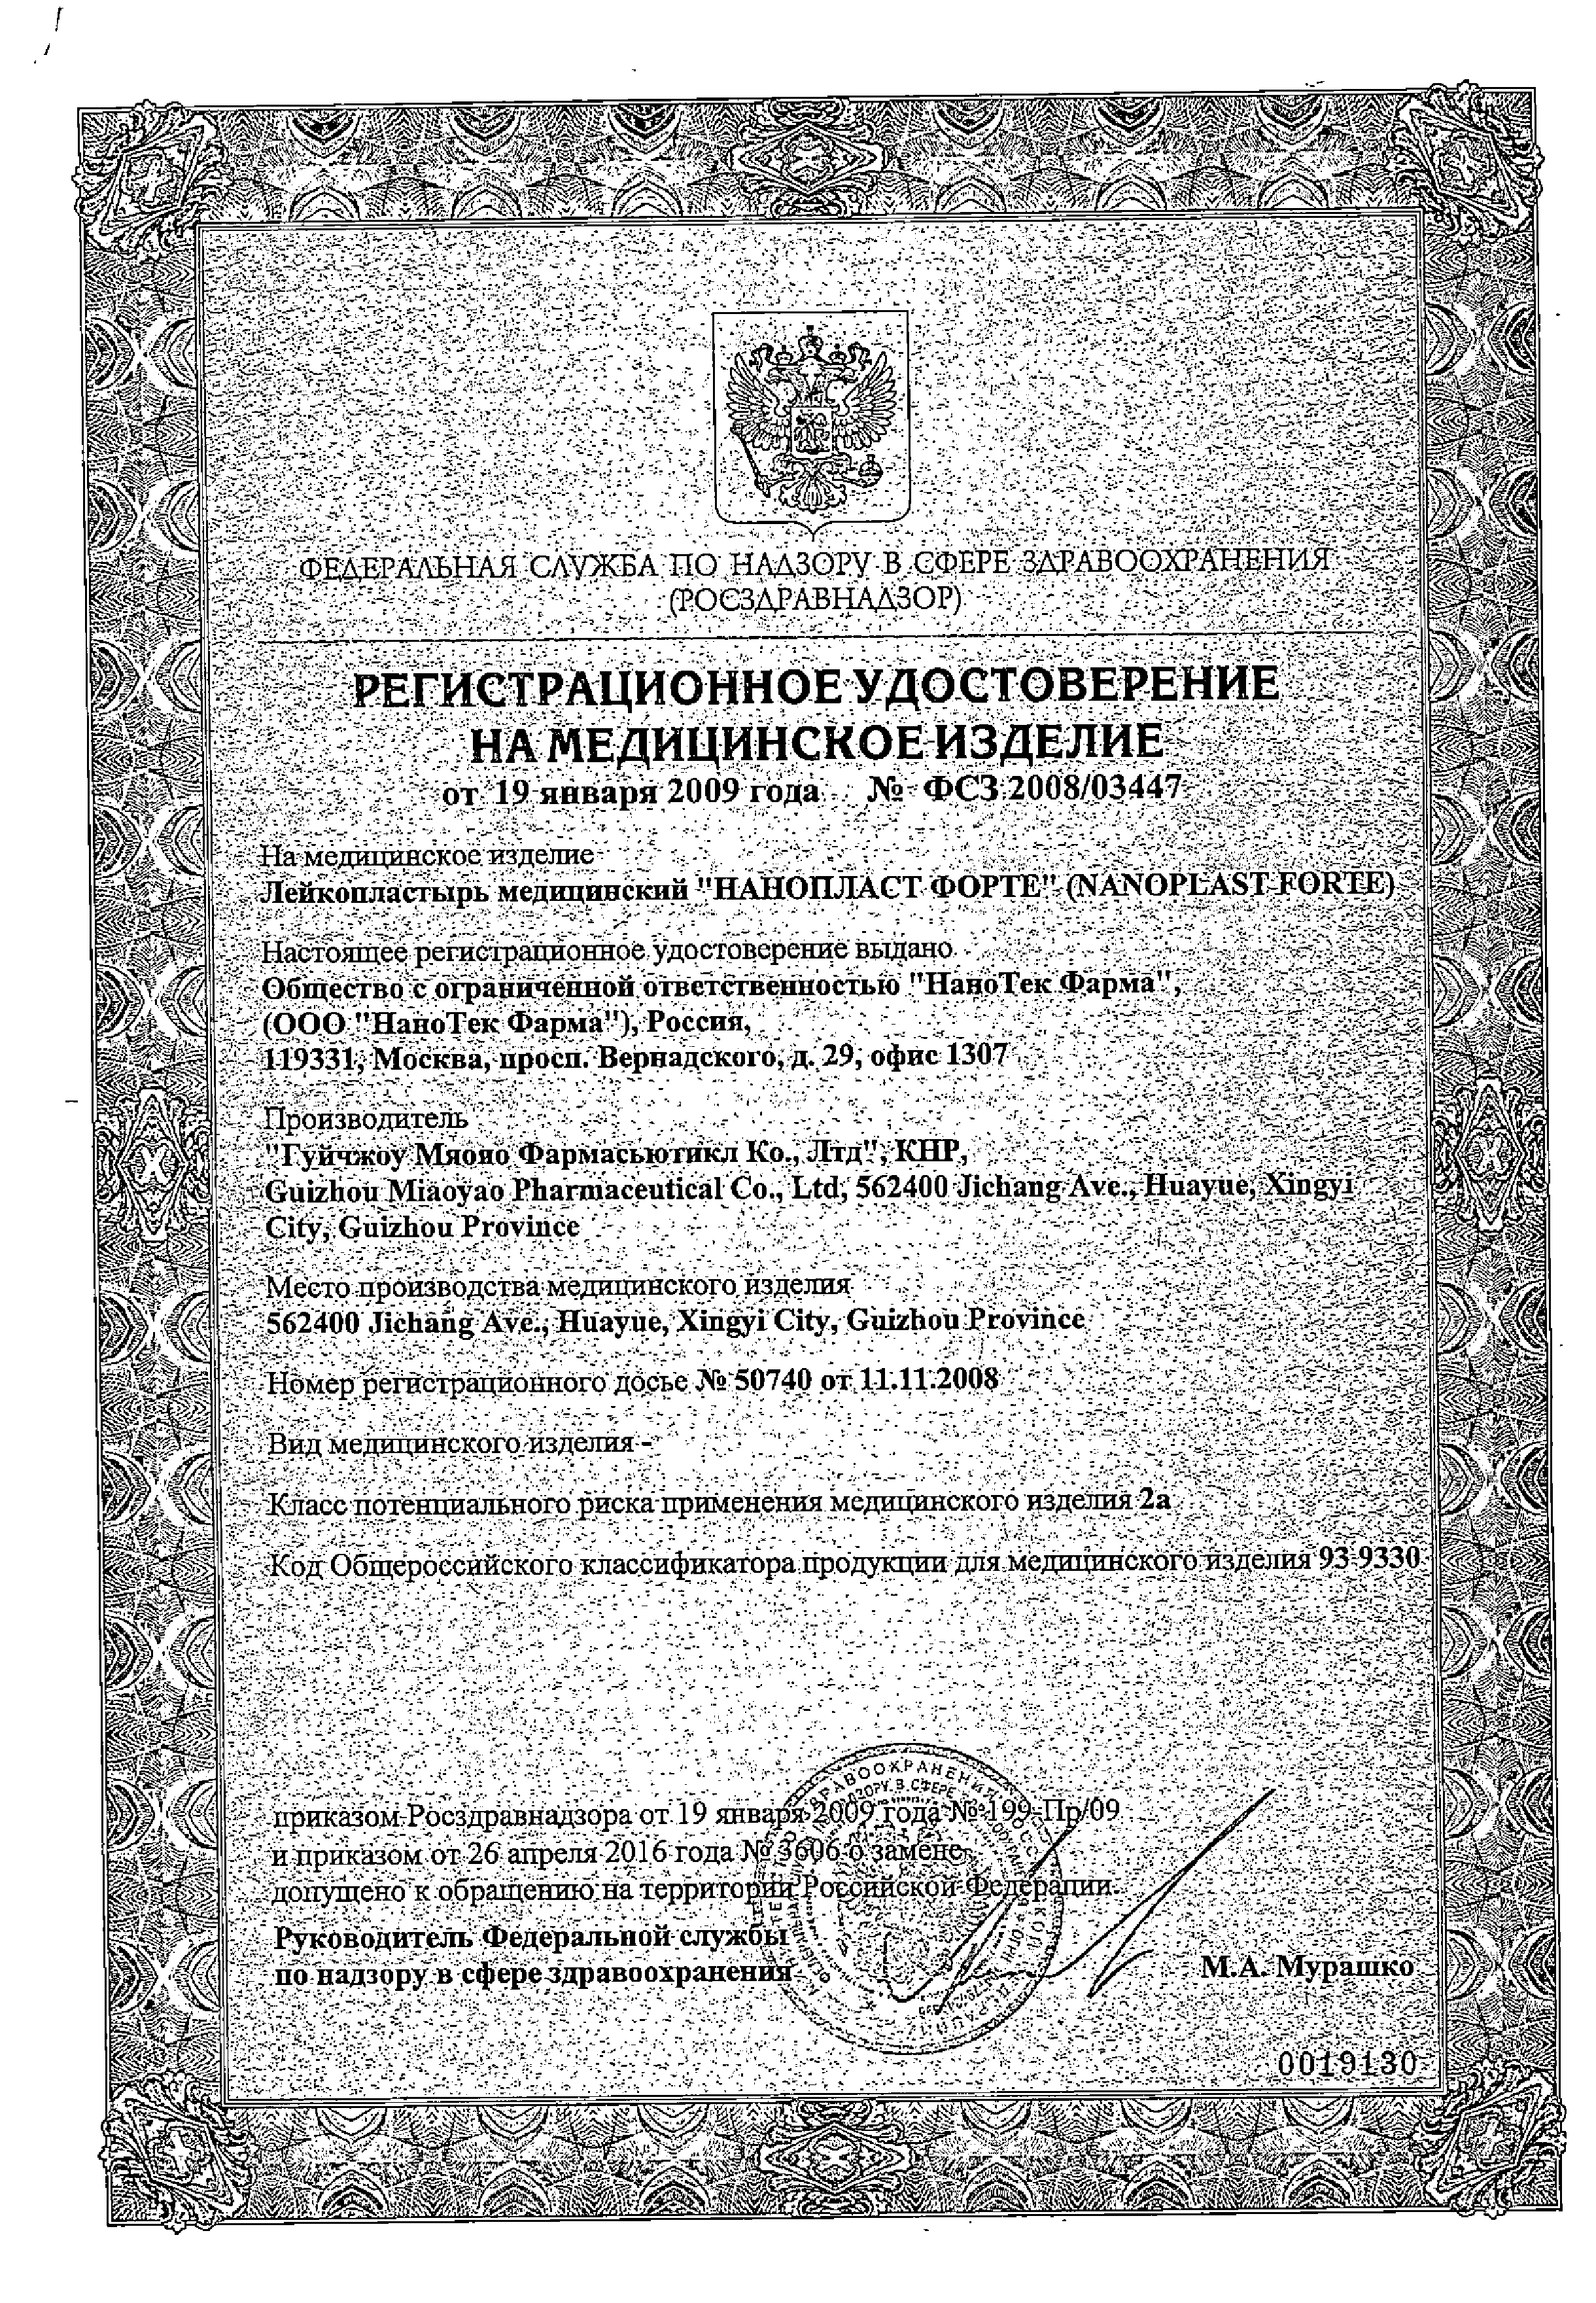 Нанопласт форте Лейкопластырь медицинский сертификат